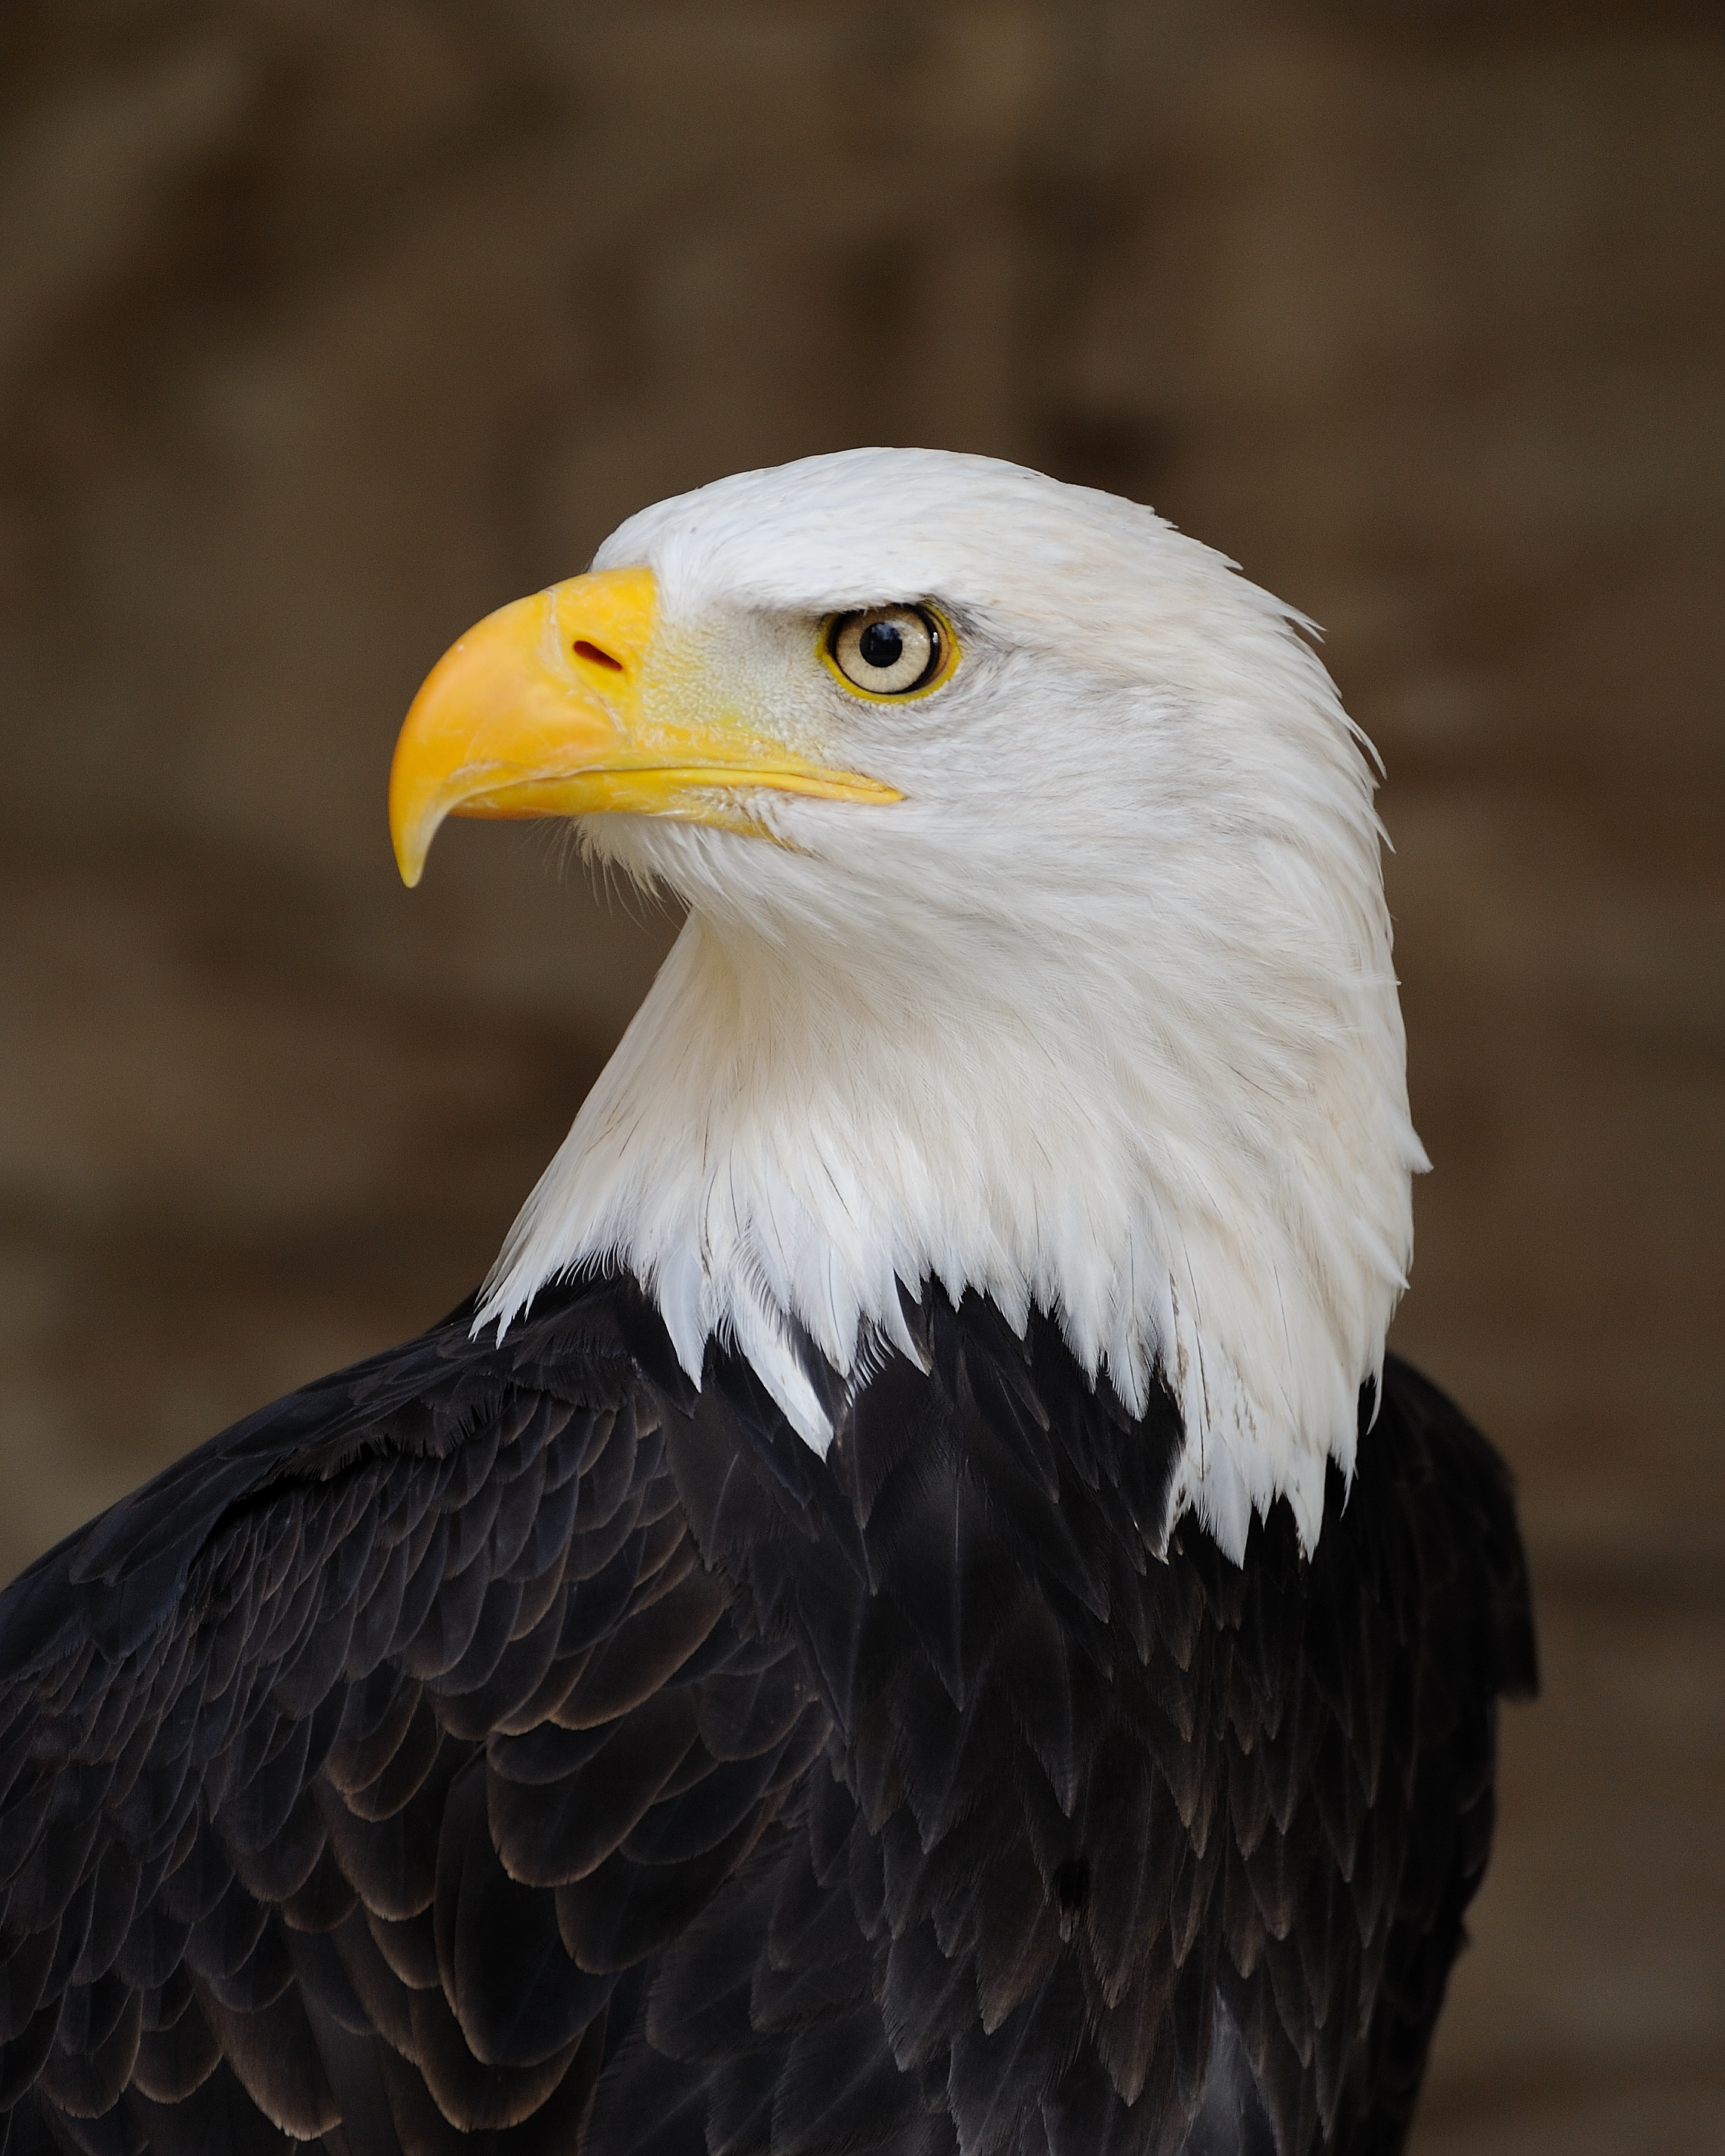 Bald eagle - Wikipedia